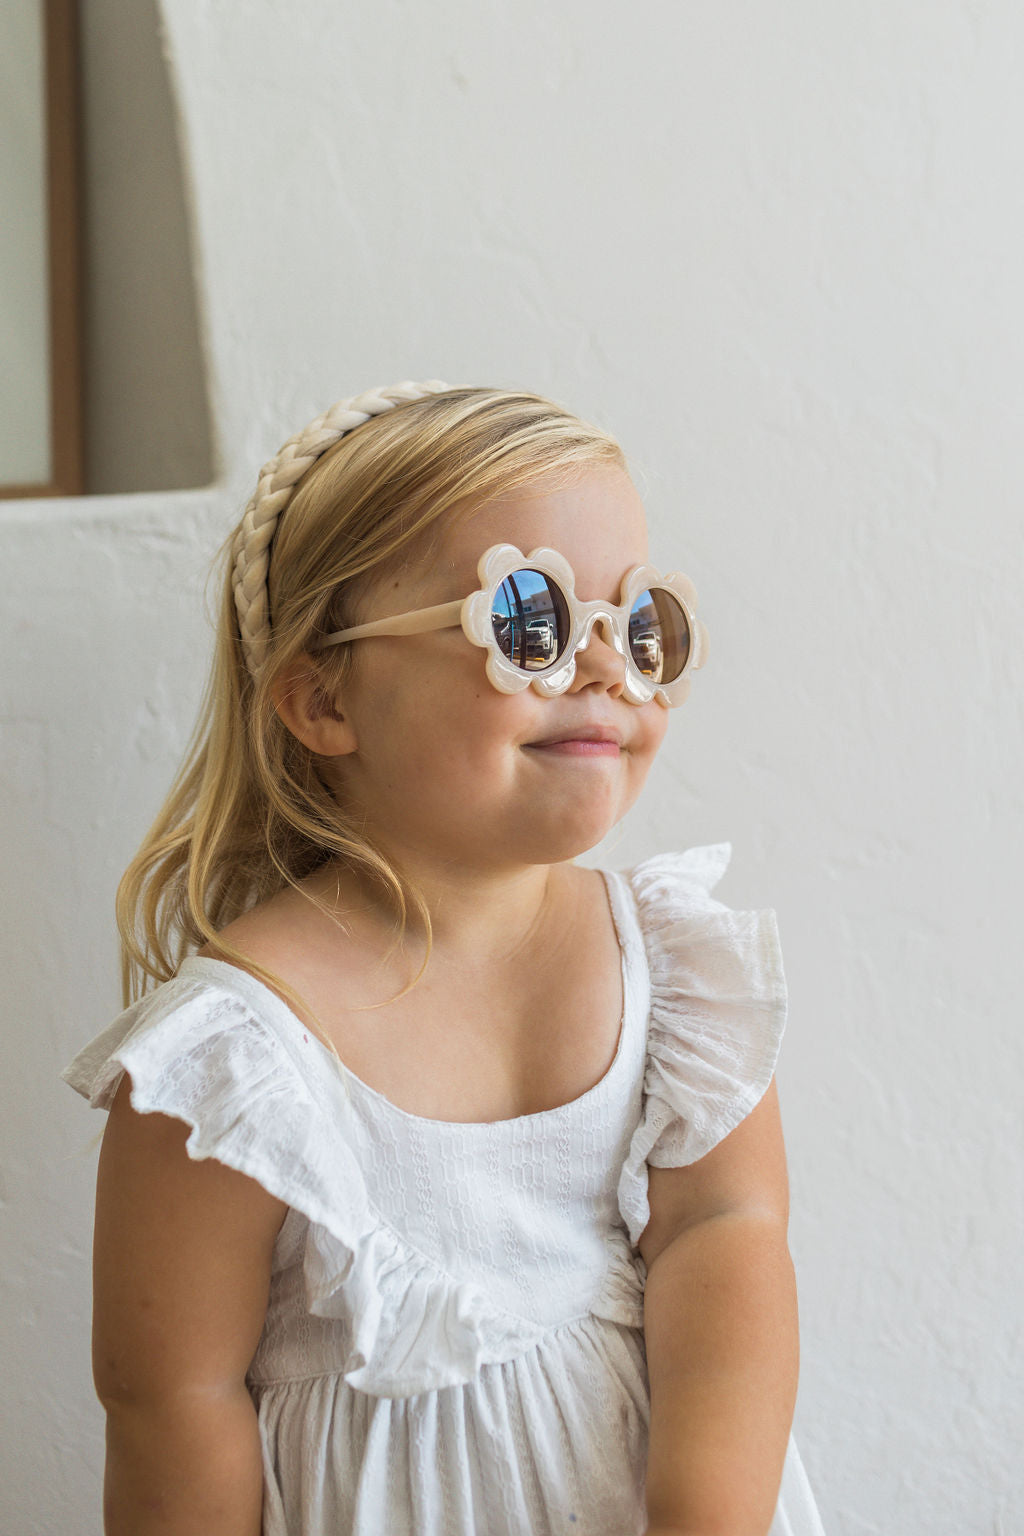 Children's Peach Tea Sunglasses by Sadie Baby